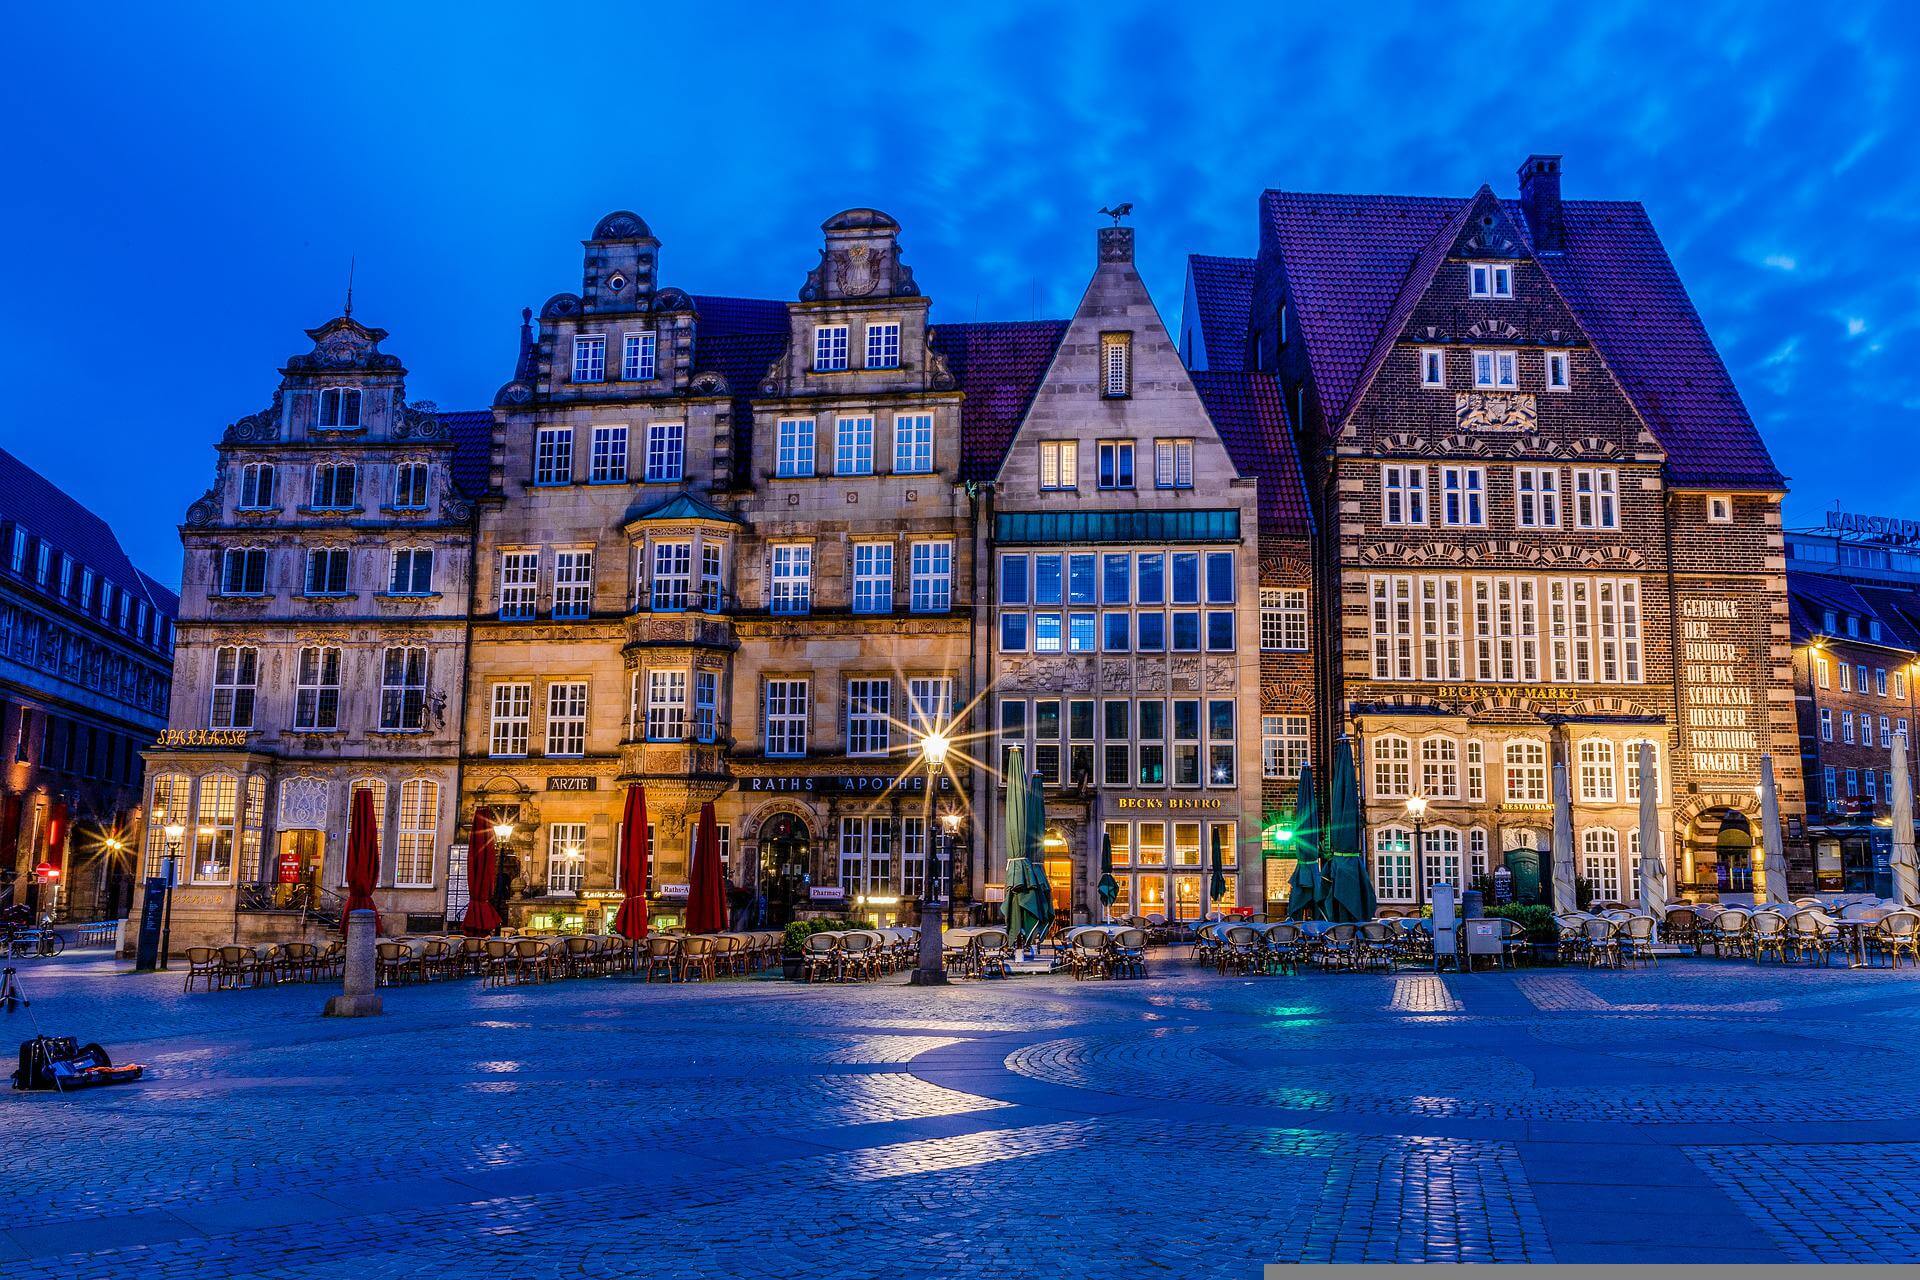 The illuminated market square in Bremen 